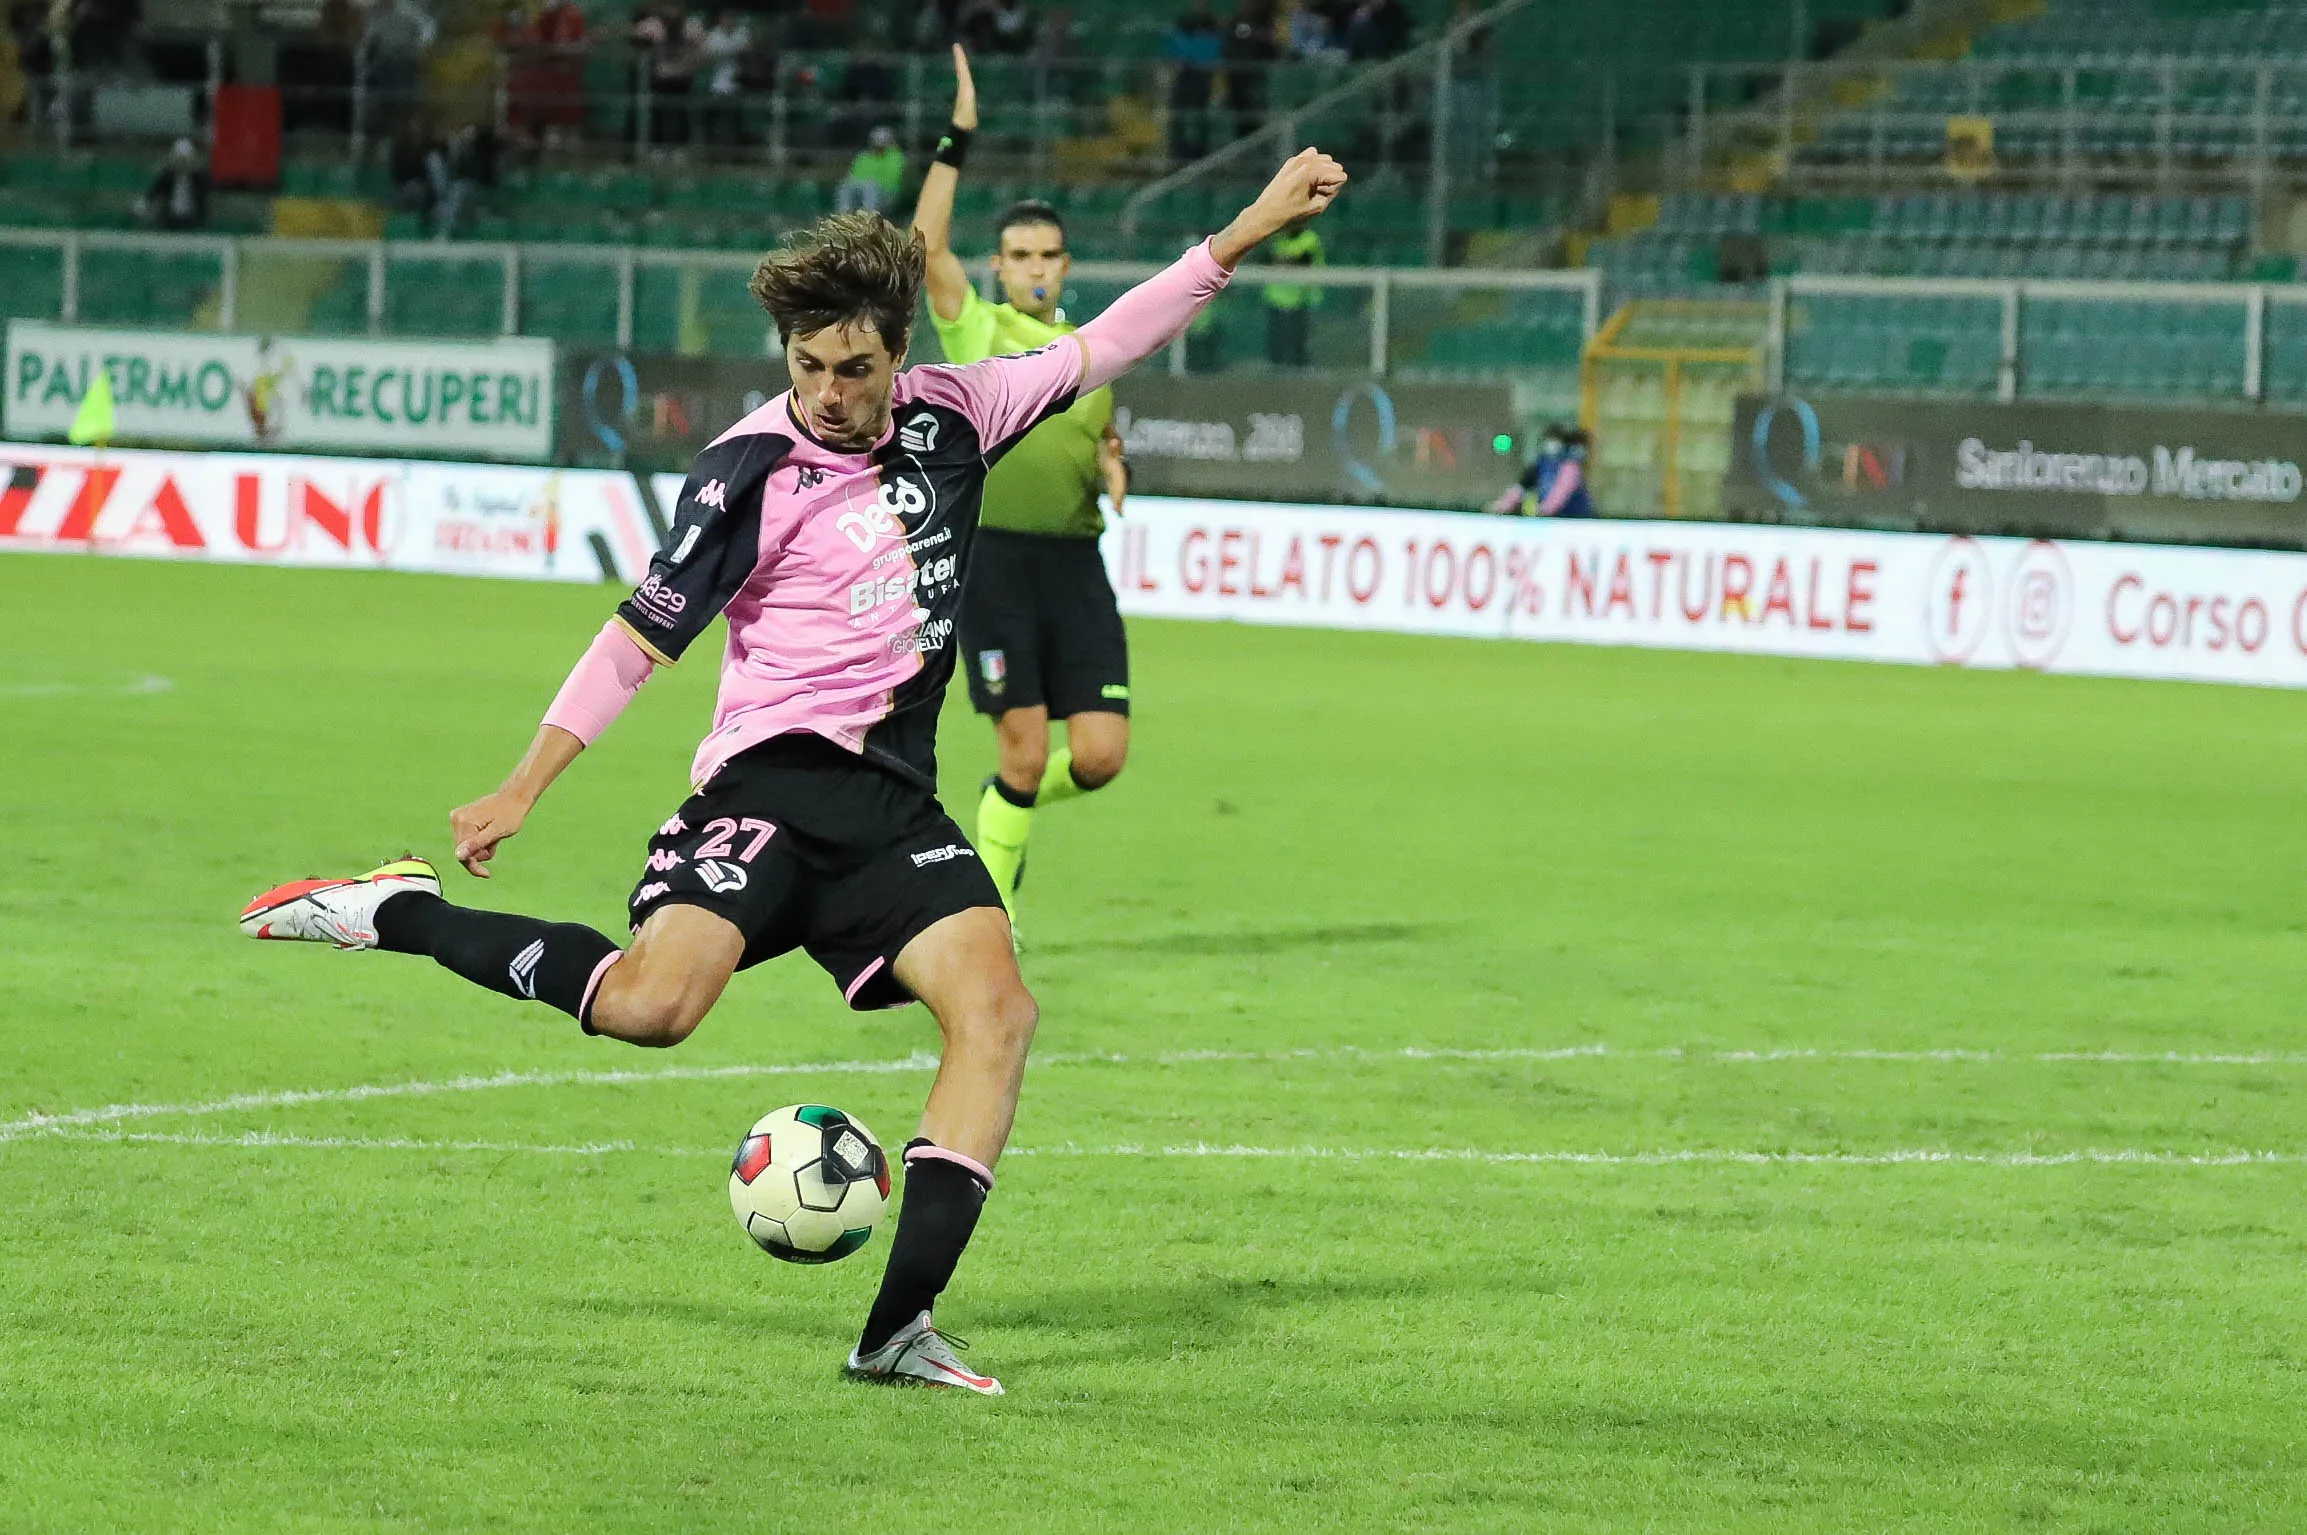 Palermo-Sampdoria, formazioni ufficiali: sorpresa Soleri, Piccini dal 1'